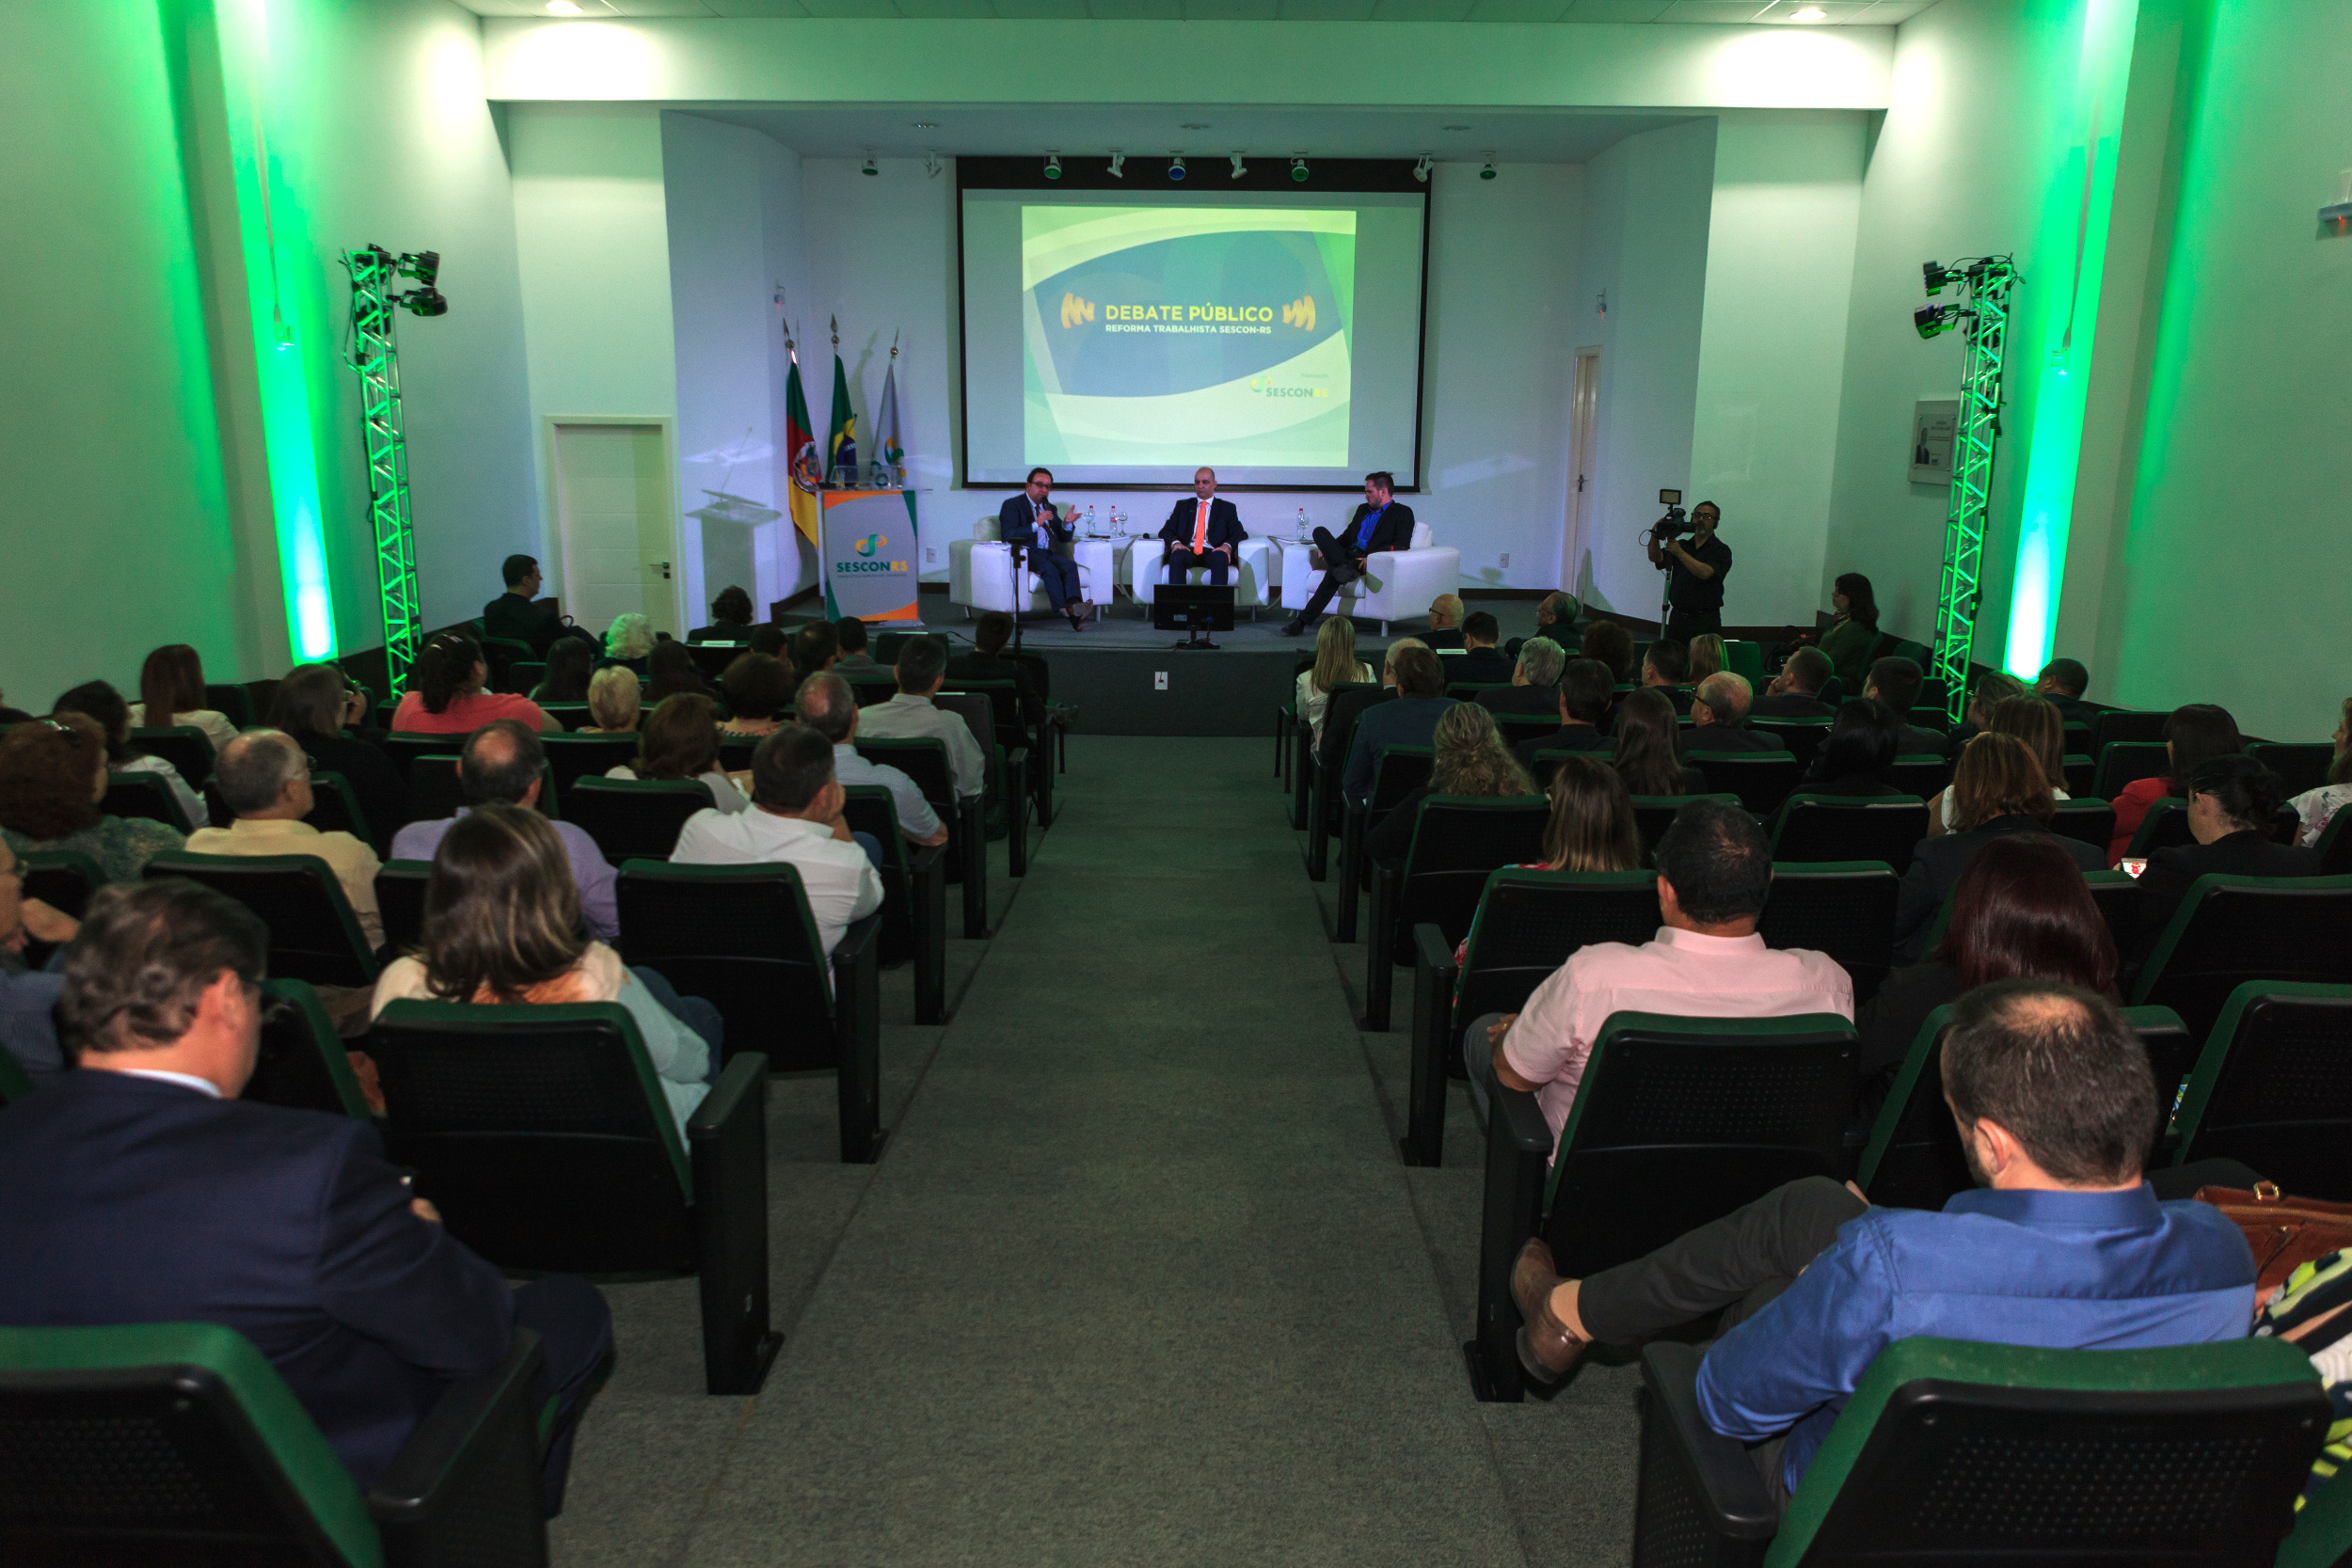 SESCON-RS - Debate Público Reforma Trabalhista - 31102017 - foto de Guili Bolfoni